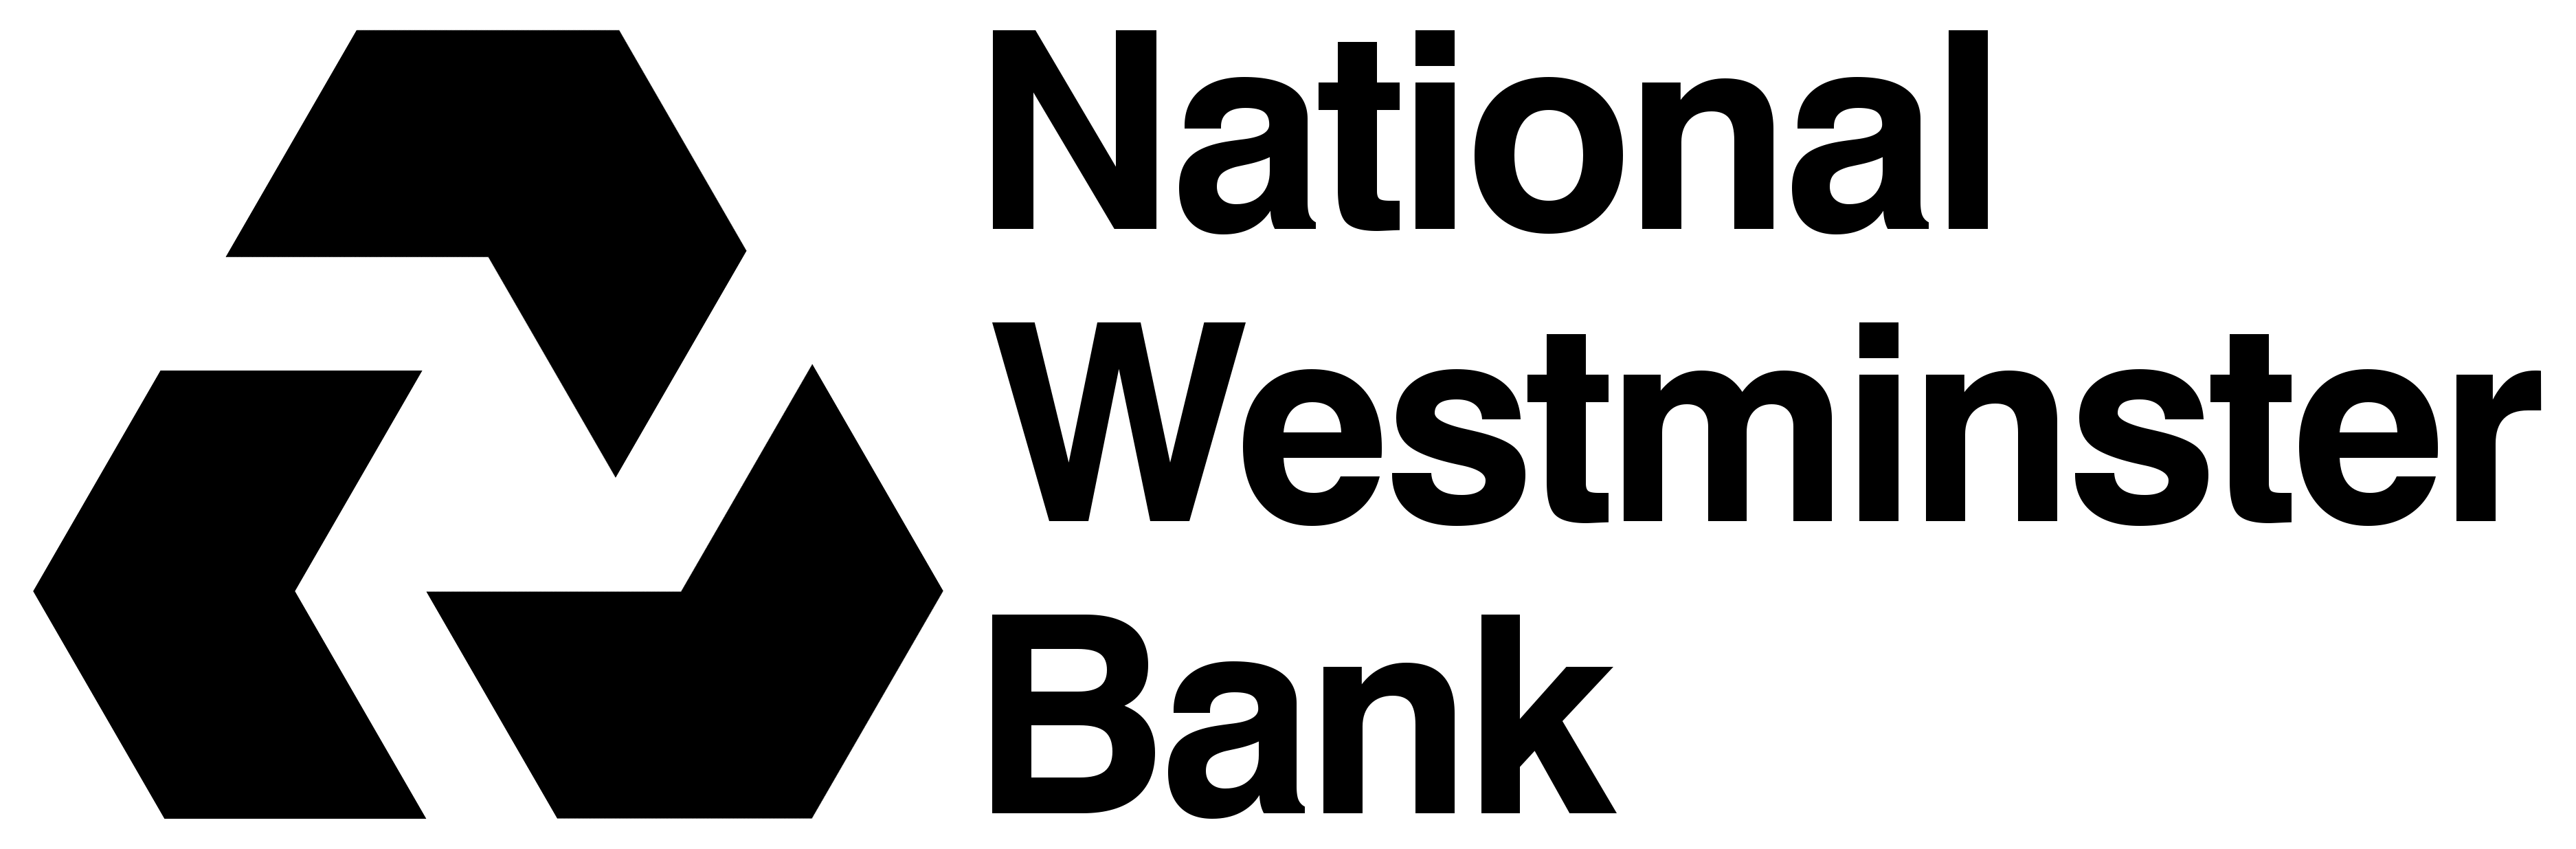 Westminster Logo - NatWest | Logopedia | FANDOM powered by Wikia